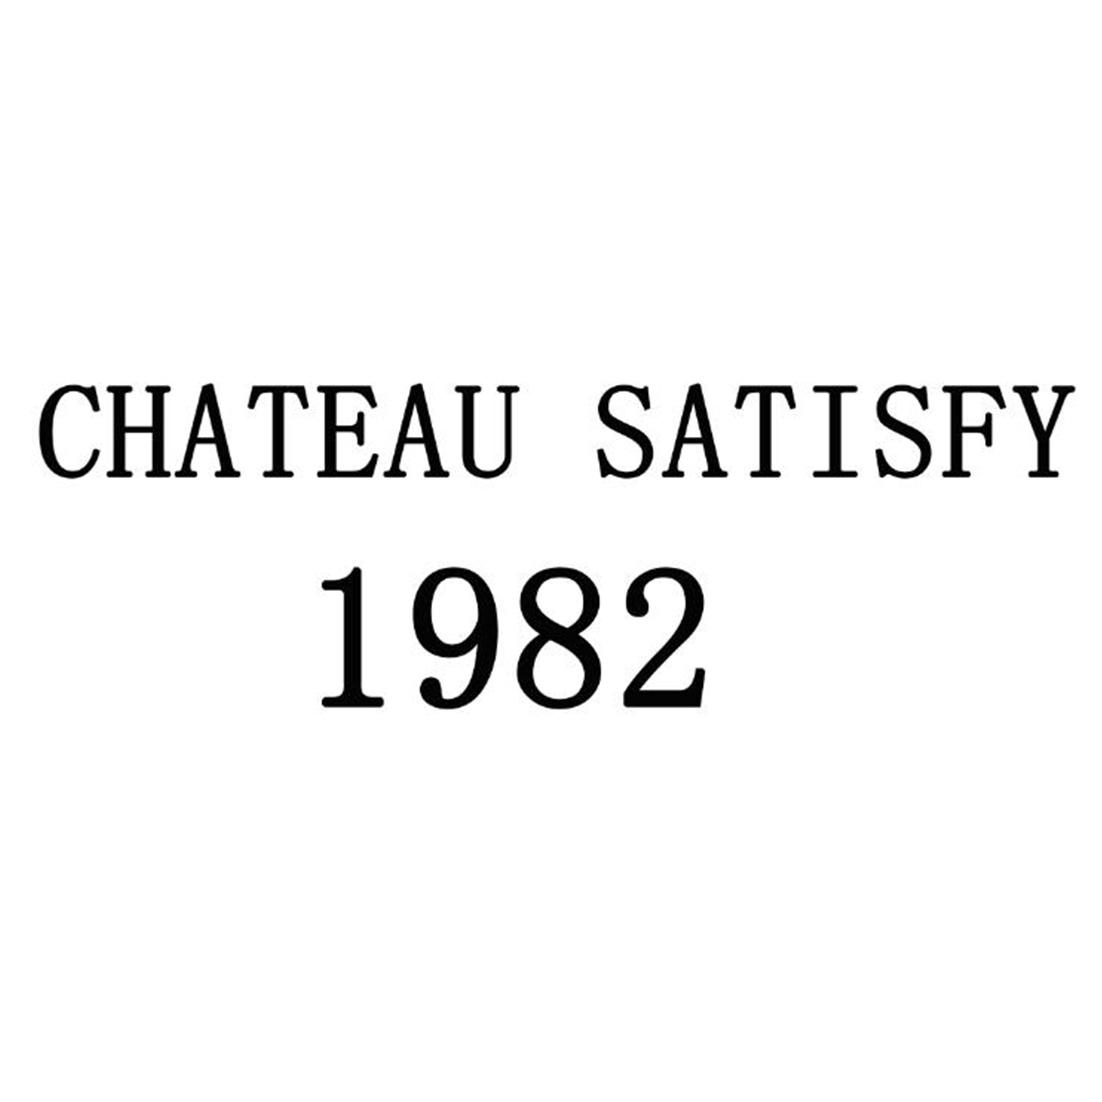  em>chateau /em>  em>satisfy /em>  em>1982 /em>